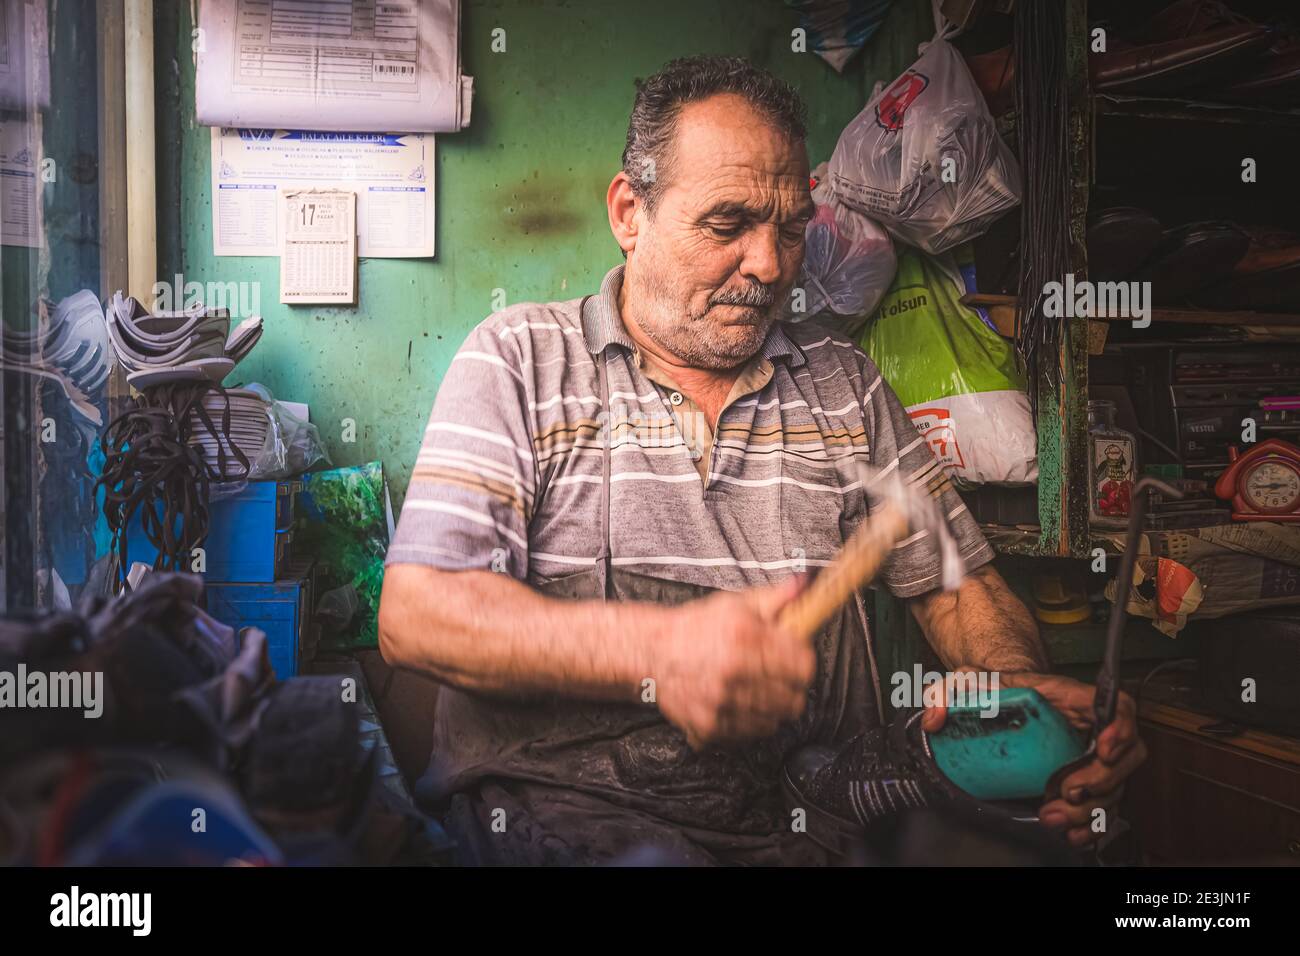 Estambul, Turquía - Septiembre 17 2017: Un retrato ambiental de un zapatero turco local reparando un zapato de su taller en el barrio de Estambul Foto de stock